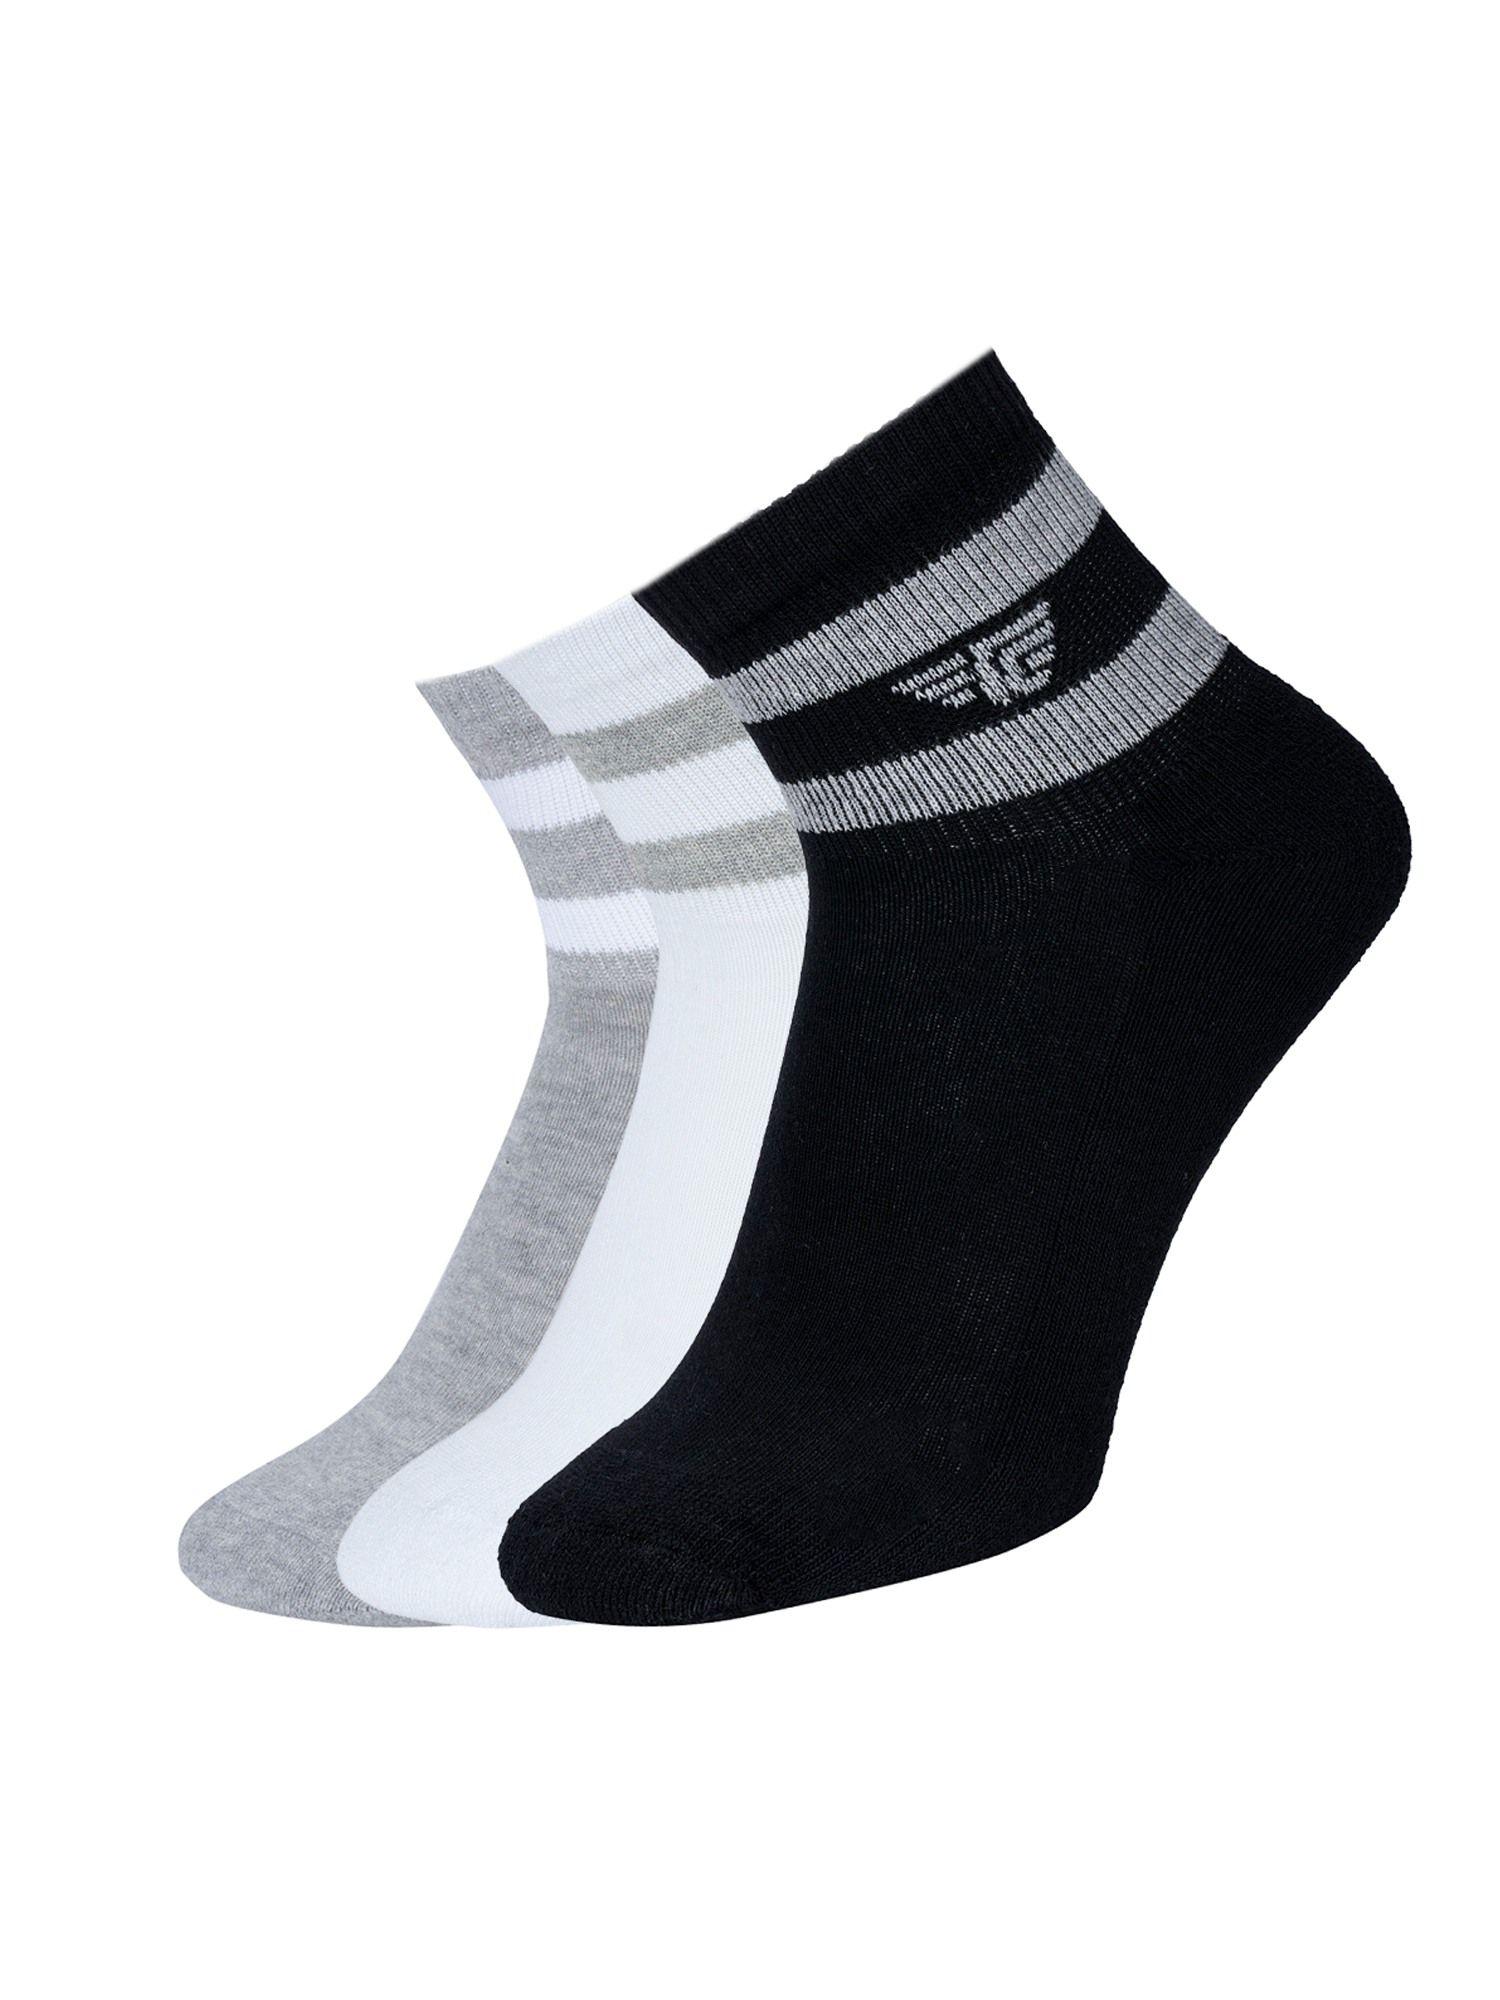 men multi-color stripe ankle length socks (pack of 3)